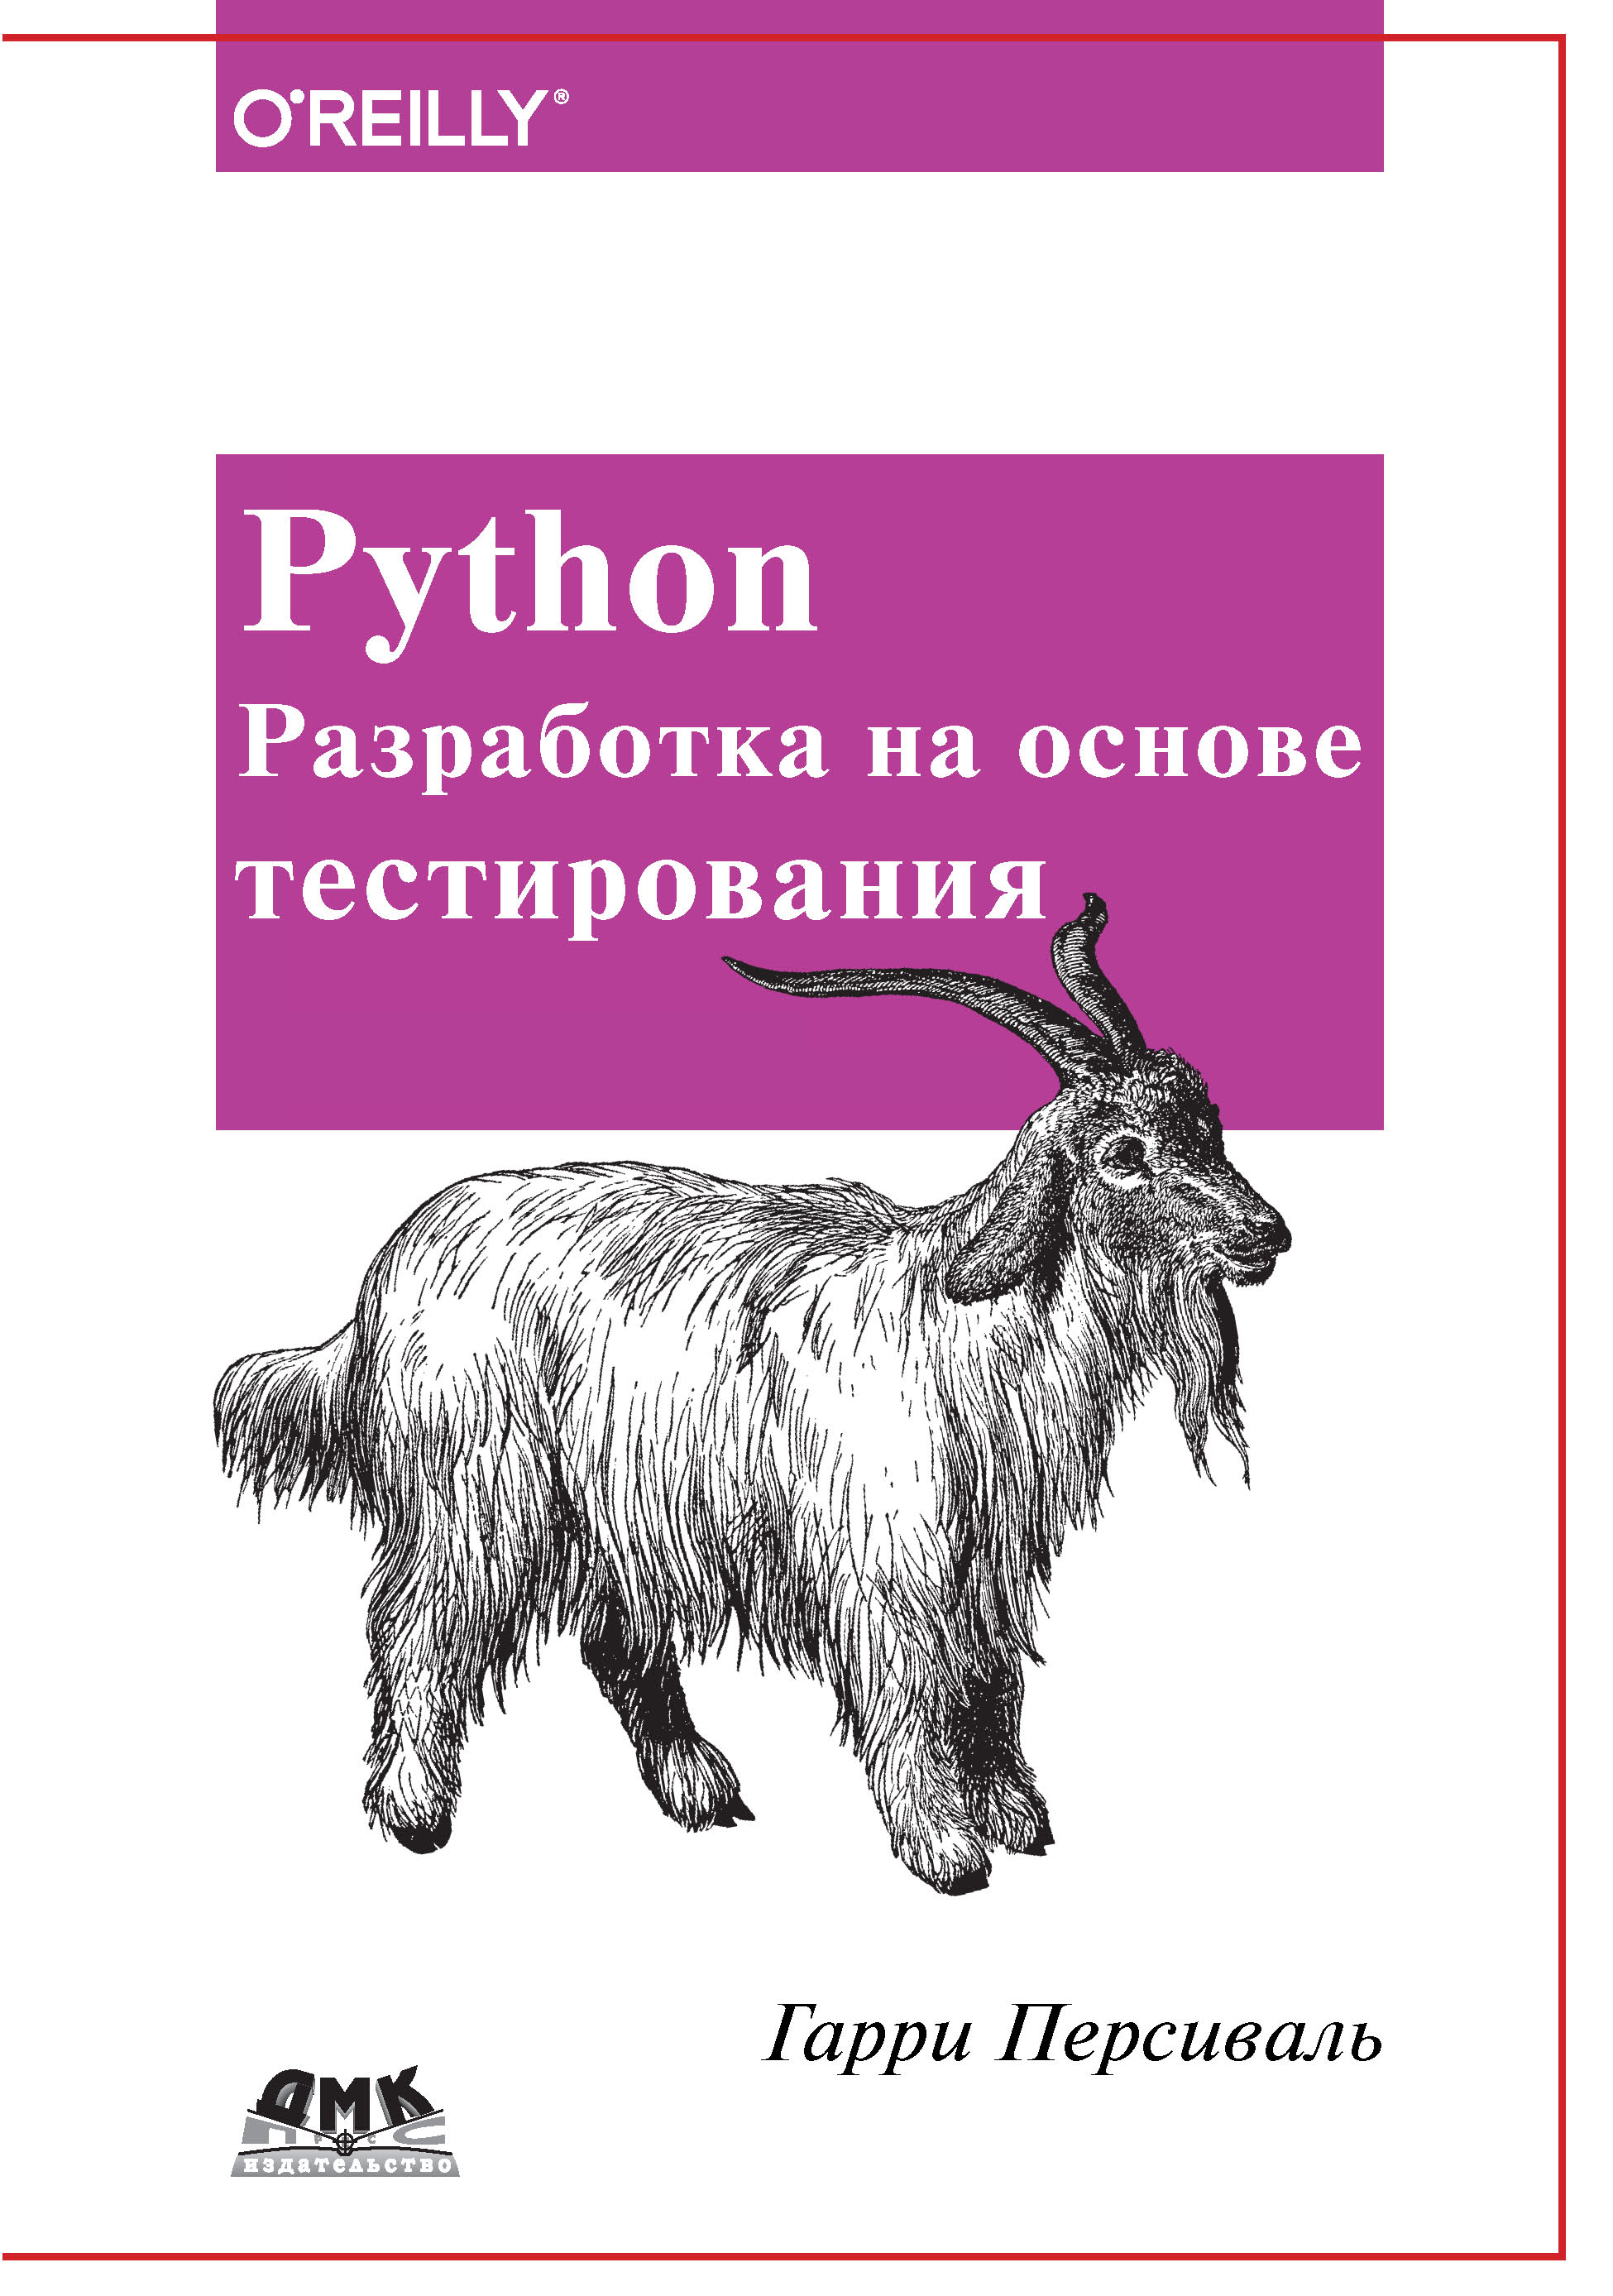 Книга  Python. Разработка на основе тестирования созданная Гарри Персиваль, Андрей Логунов может относится к жанру зарубежная компьютерная литература, программирование. Стоимость электронной книги Python. Разработка на основе тестирования с идентификатором 48411143 составляет 1049.00 руб.